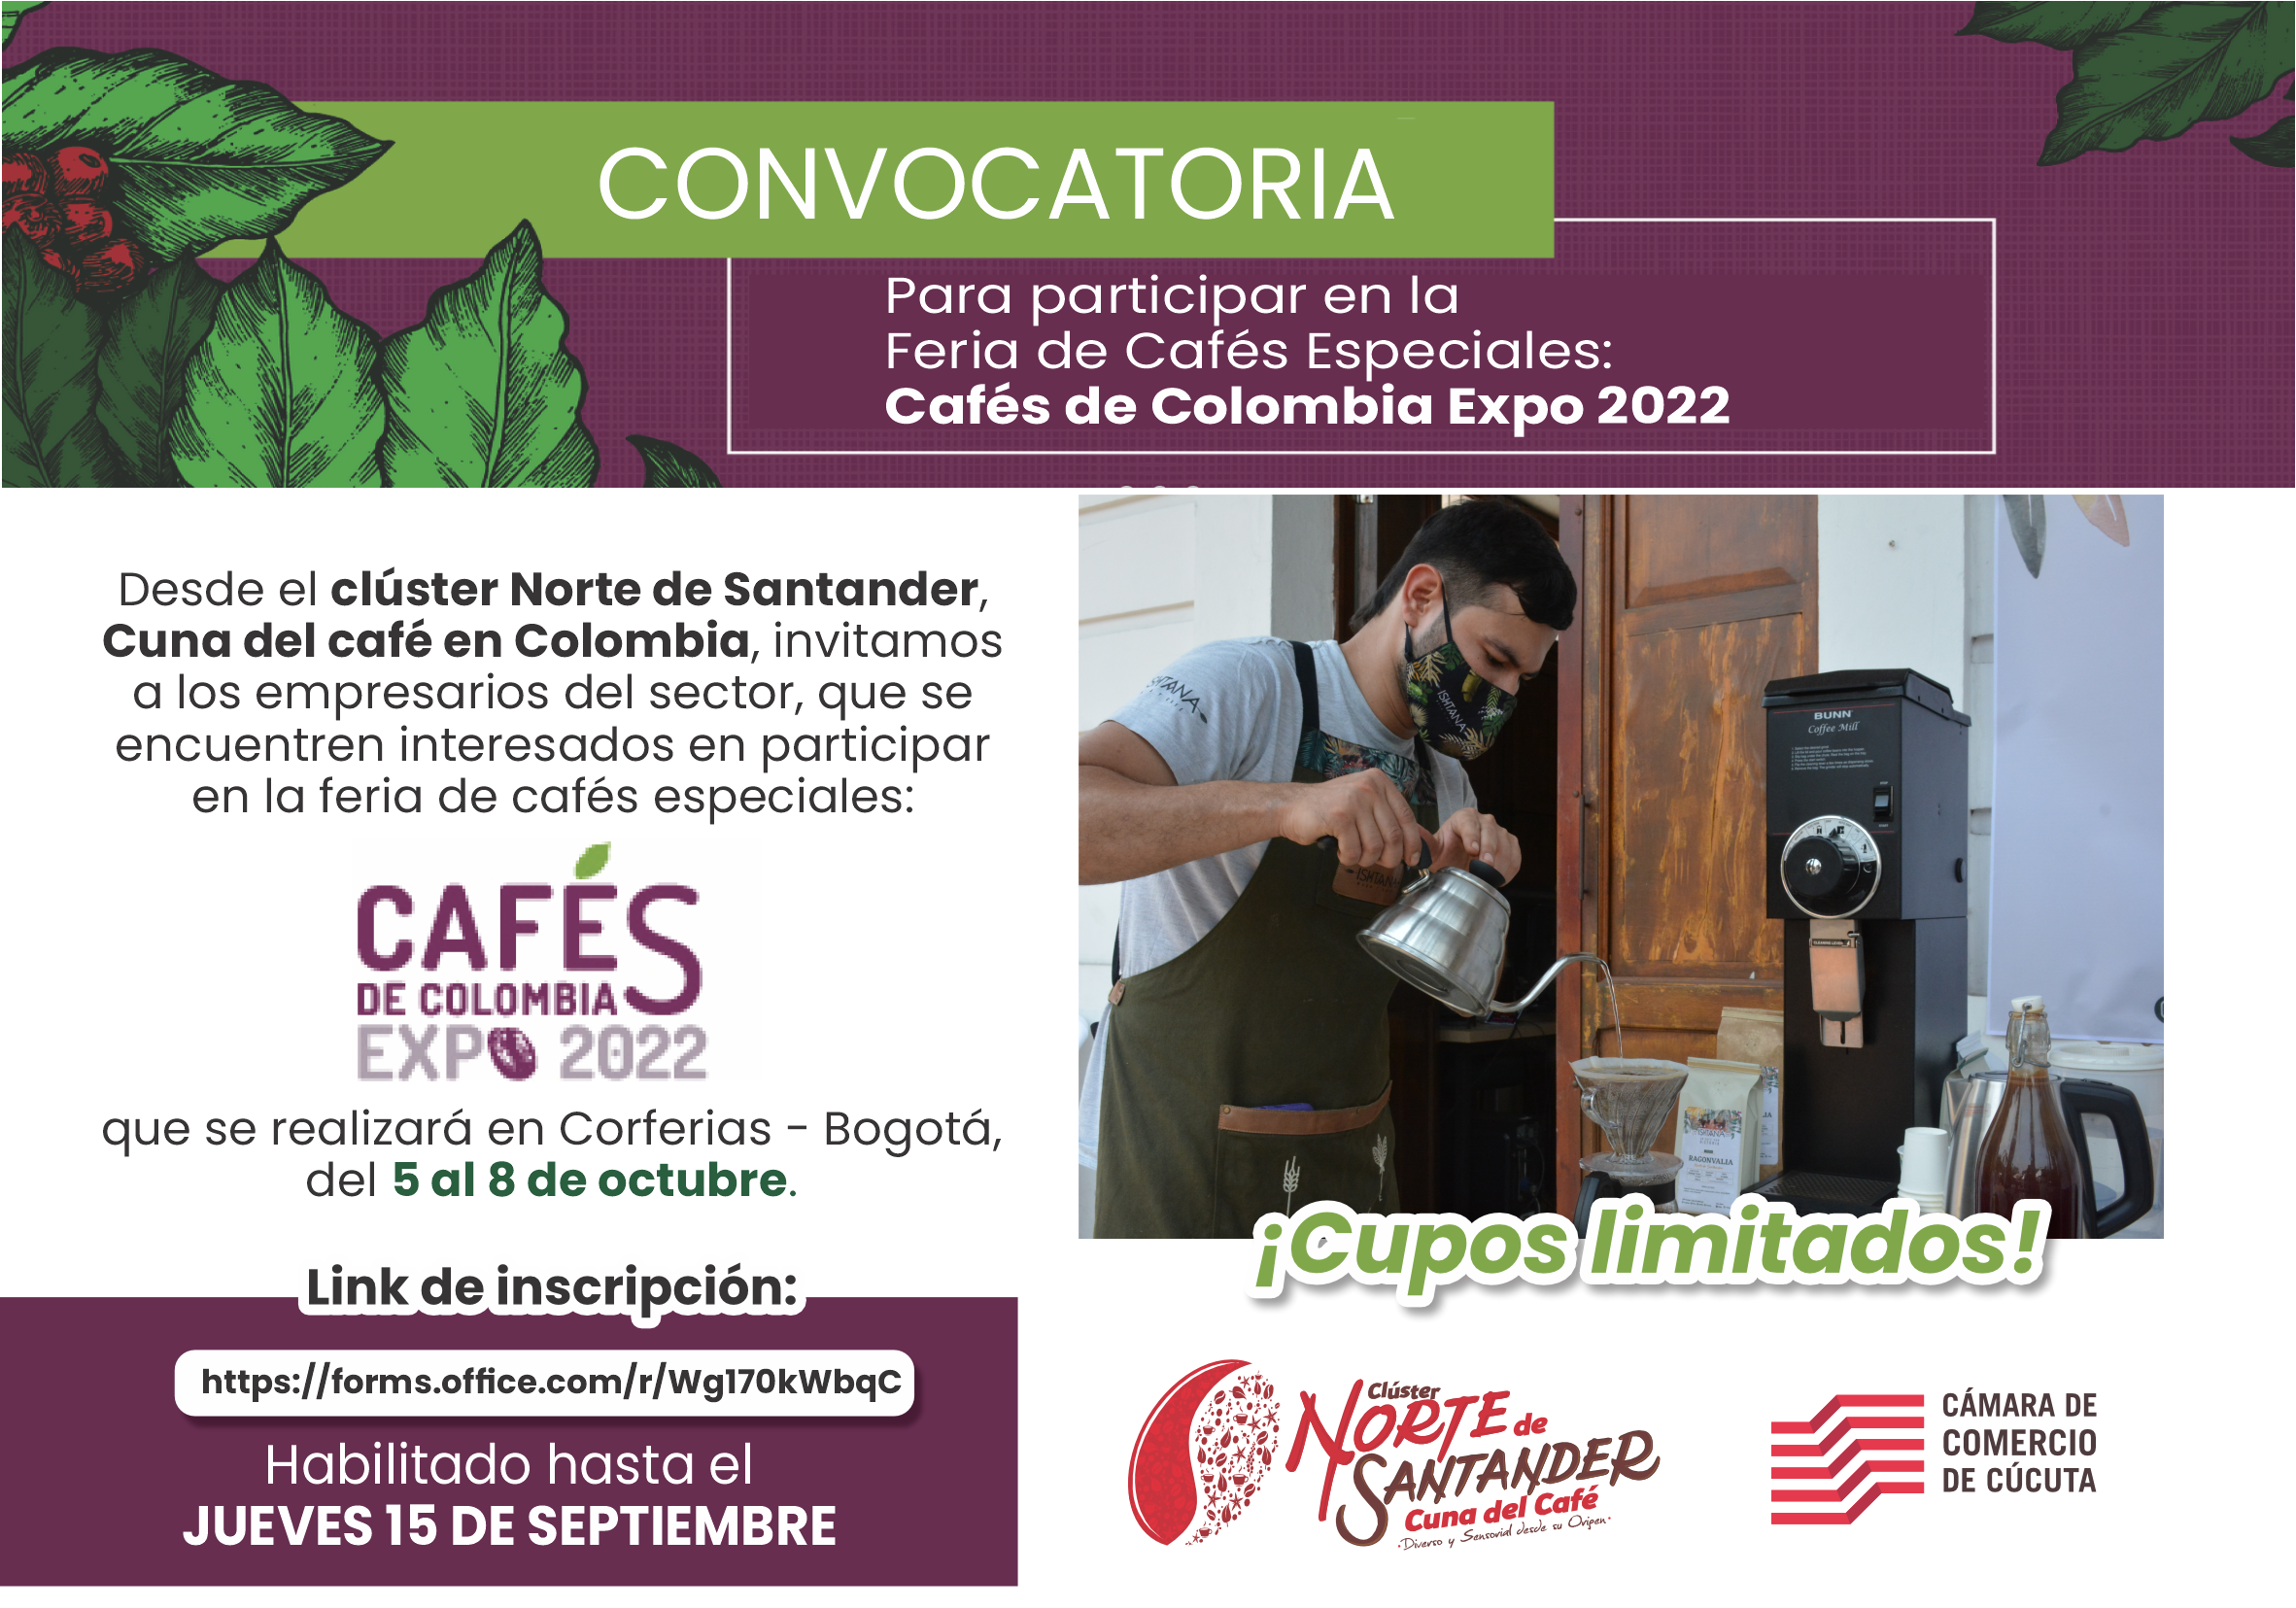 Cupos disponibles para participar en Cafs de Colombia Expo 2022